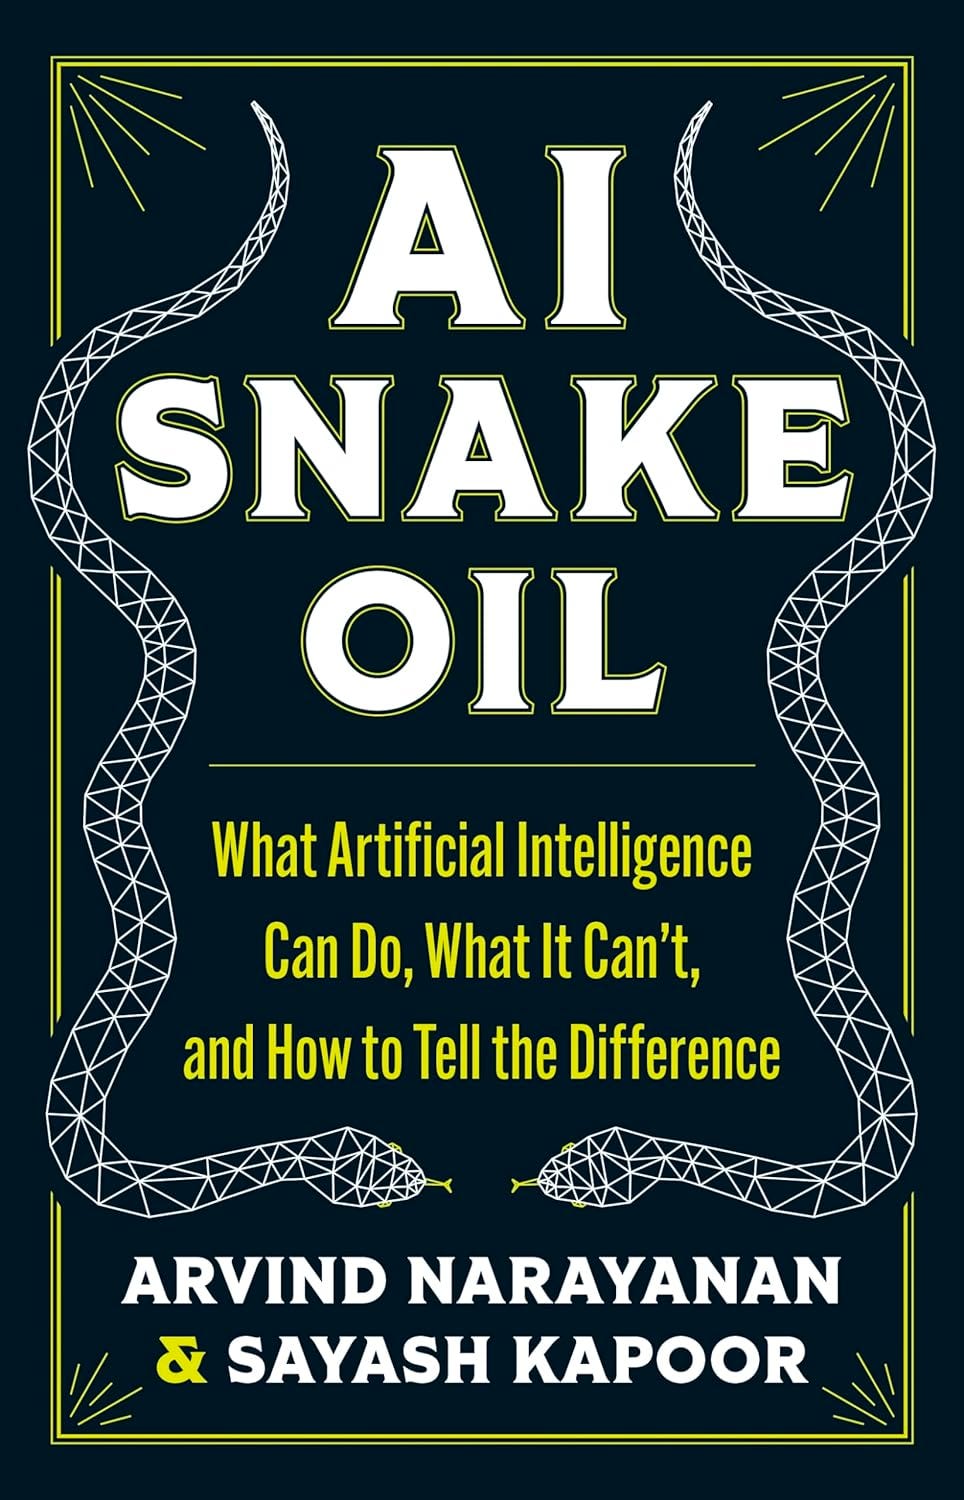 La copertina del libro. Sfondo nero, il titolo è in alto in bianco. A destra e a sinistra ci sono due disegni di due serpenti.